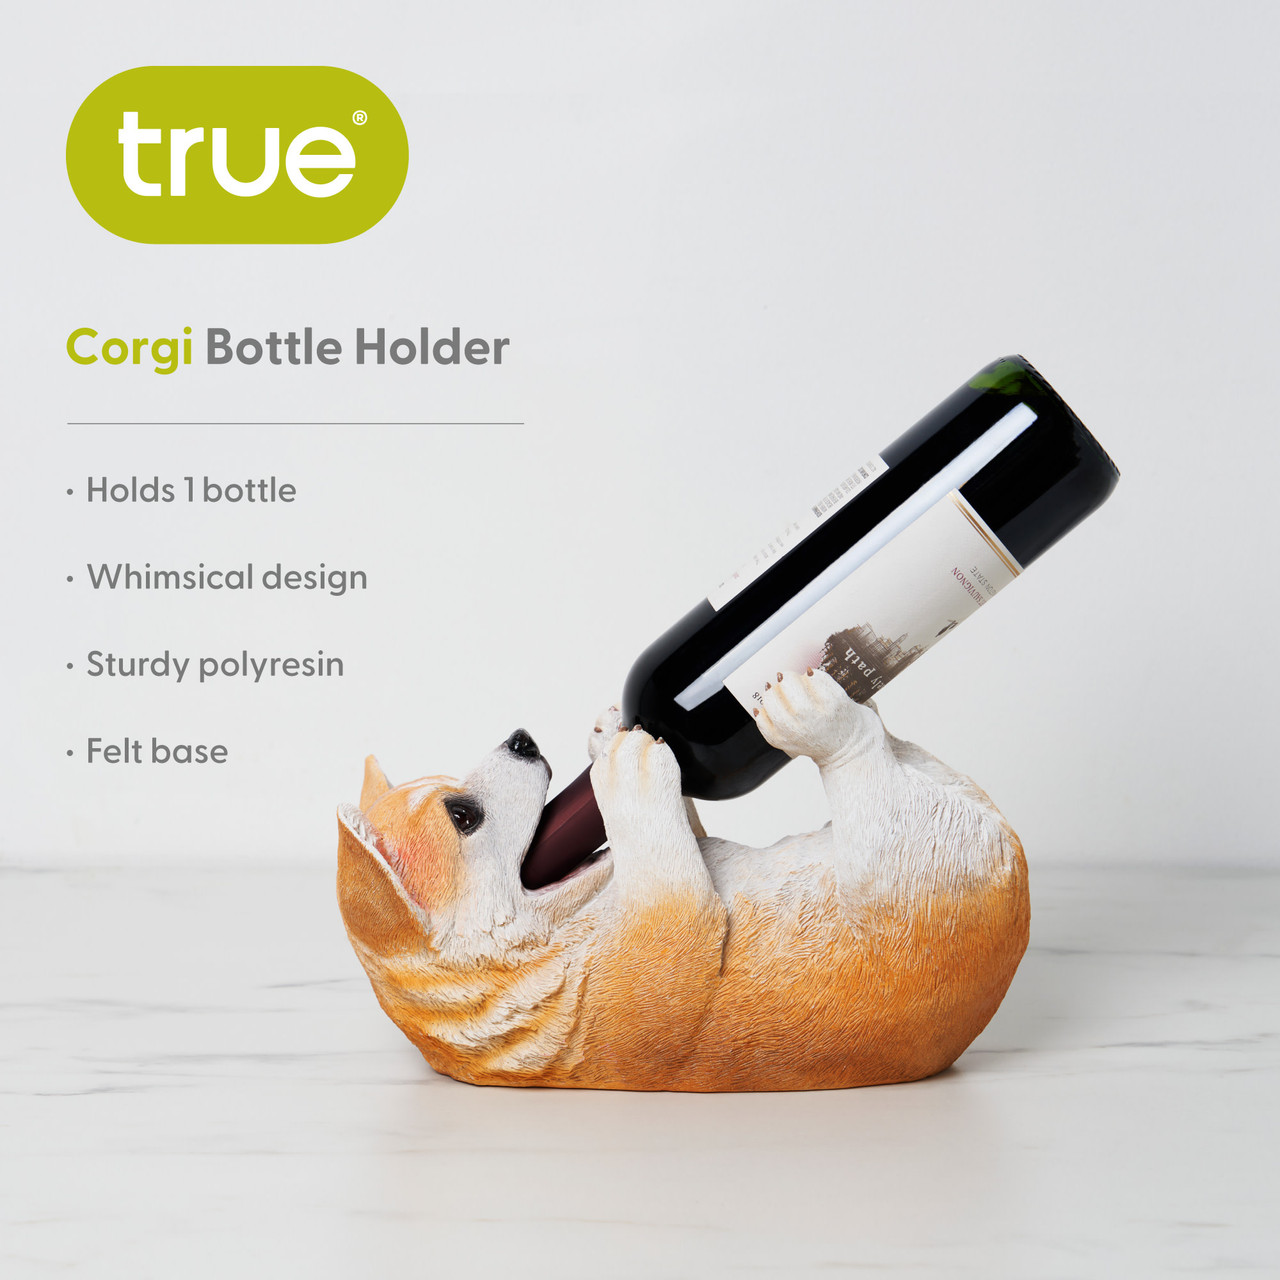 Corgi Wine Bottle Holder by True